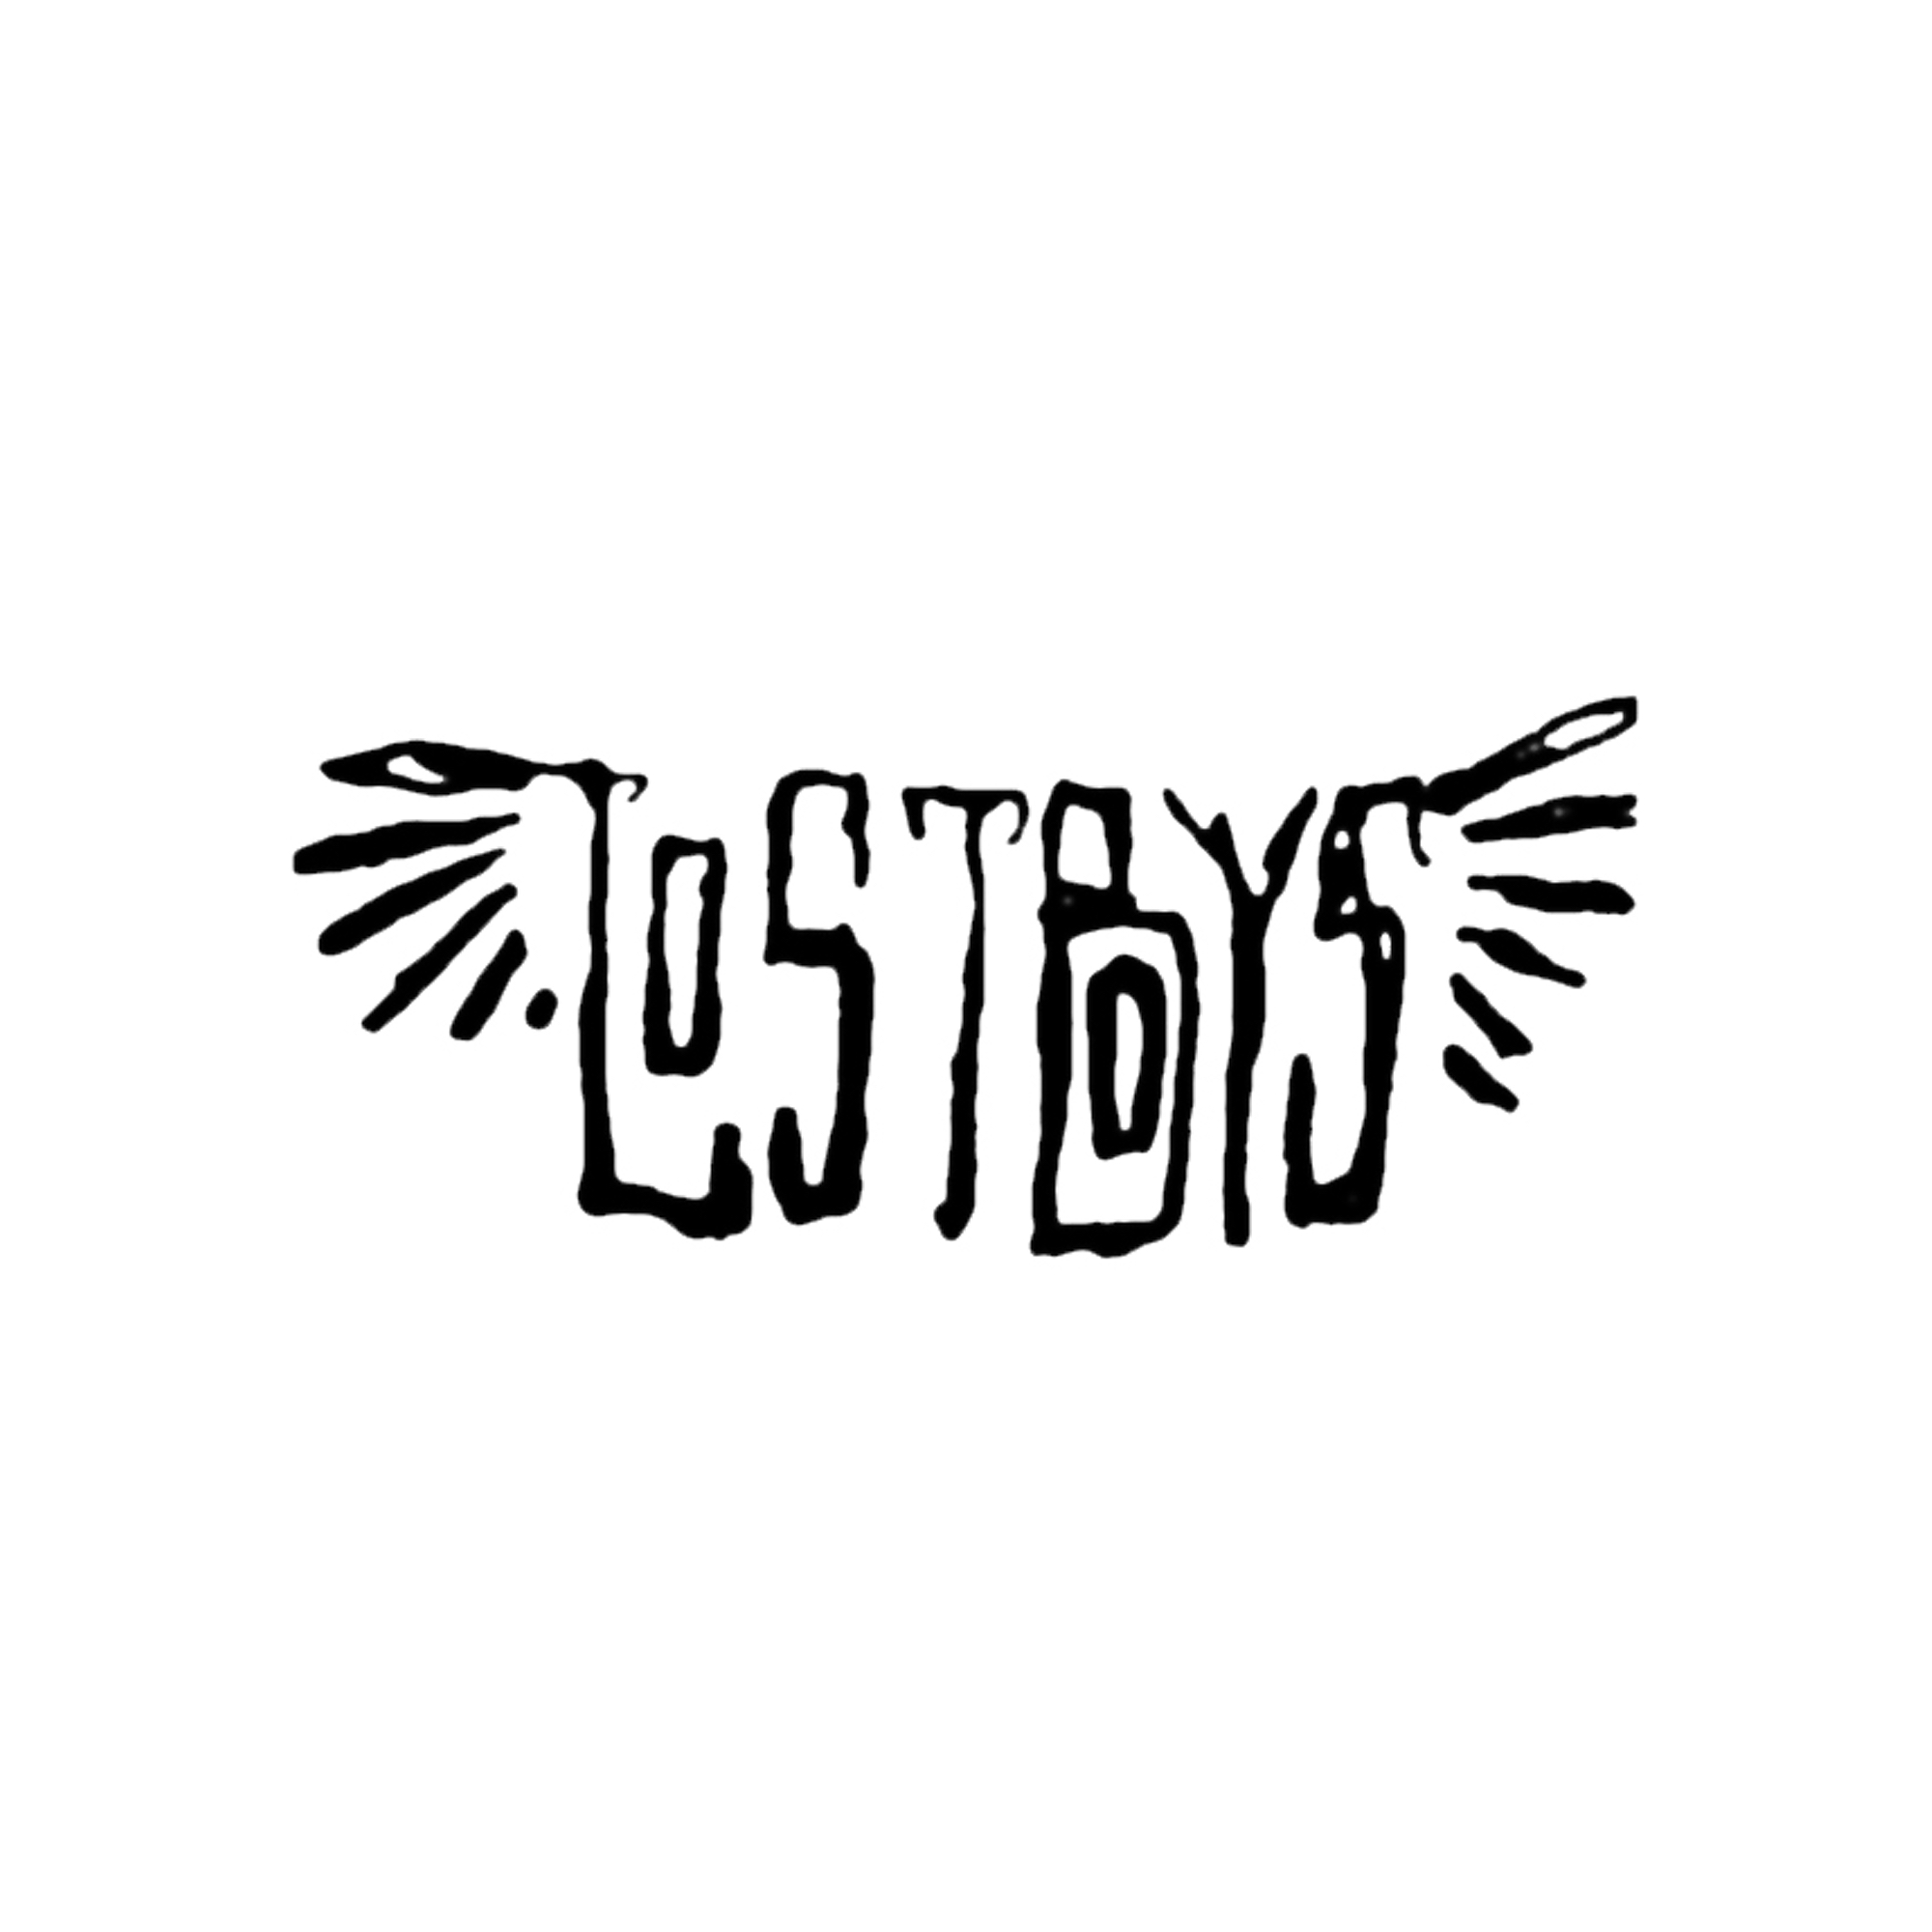 Lostboys Track Club Logo